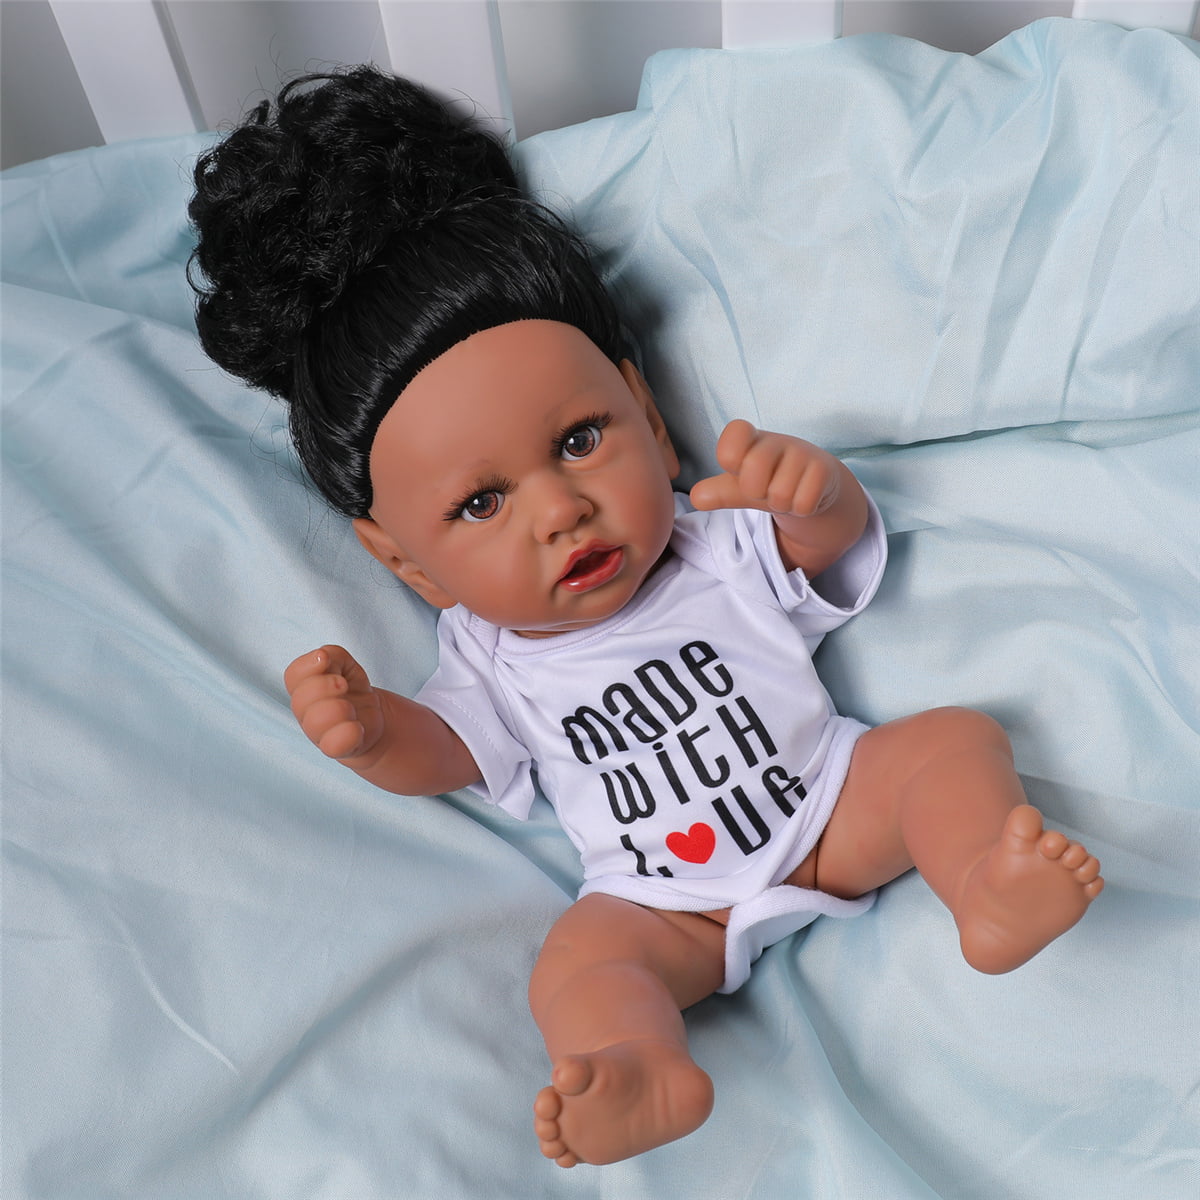 Full Vinyl Silicone Reborn African American Dolls Lifelike Boy Doll Newborn Baby 